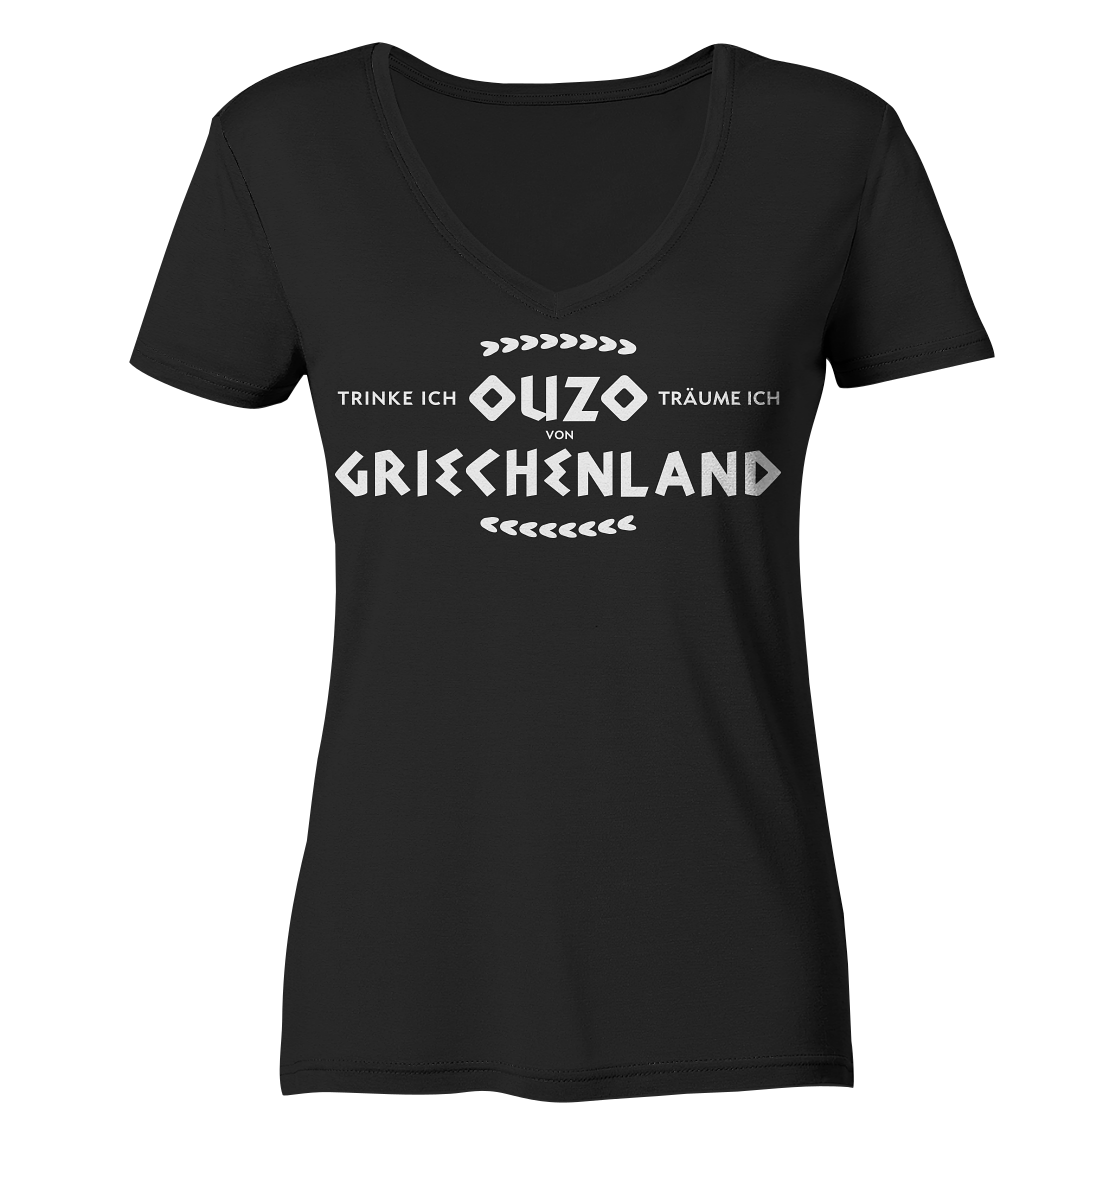 Trinke ich Ouzo träume ich von Griechenland - Ladies Organic V-Neck Shirt